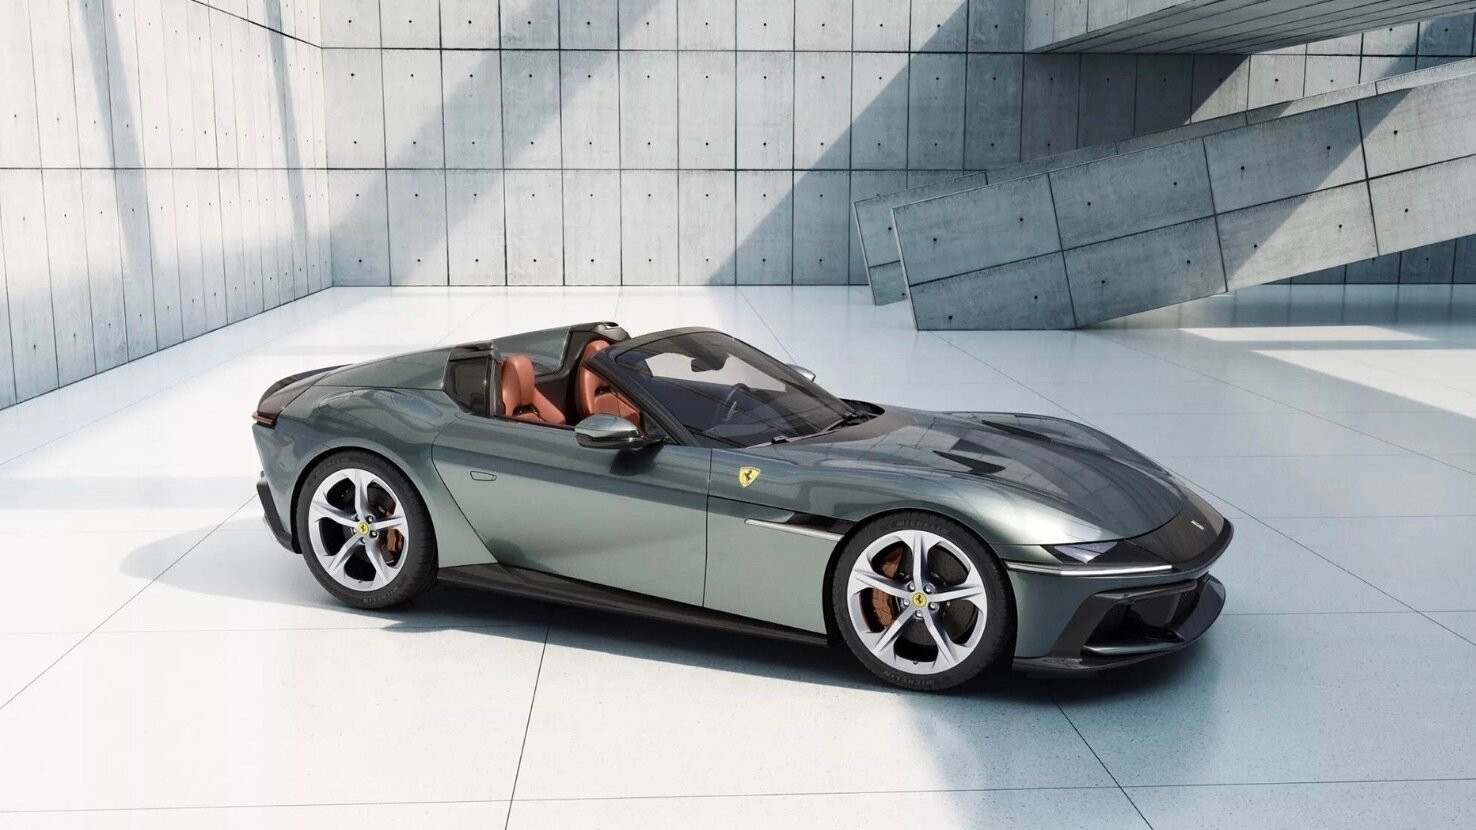 Siêu xe Ferrari 12Cilindri vừa ra mắt thế giới đã 'lọt mắt xanh' Cường Đô la - 9